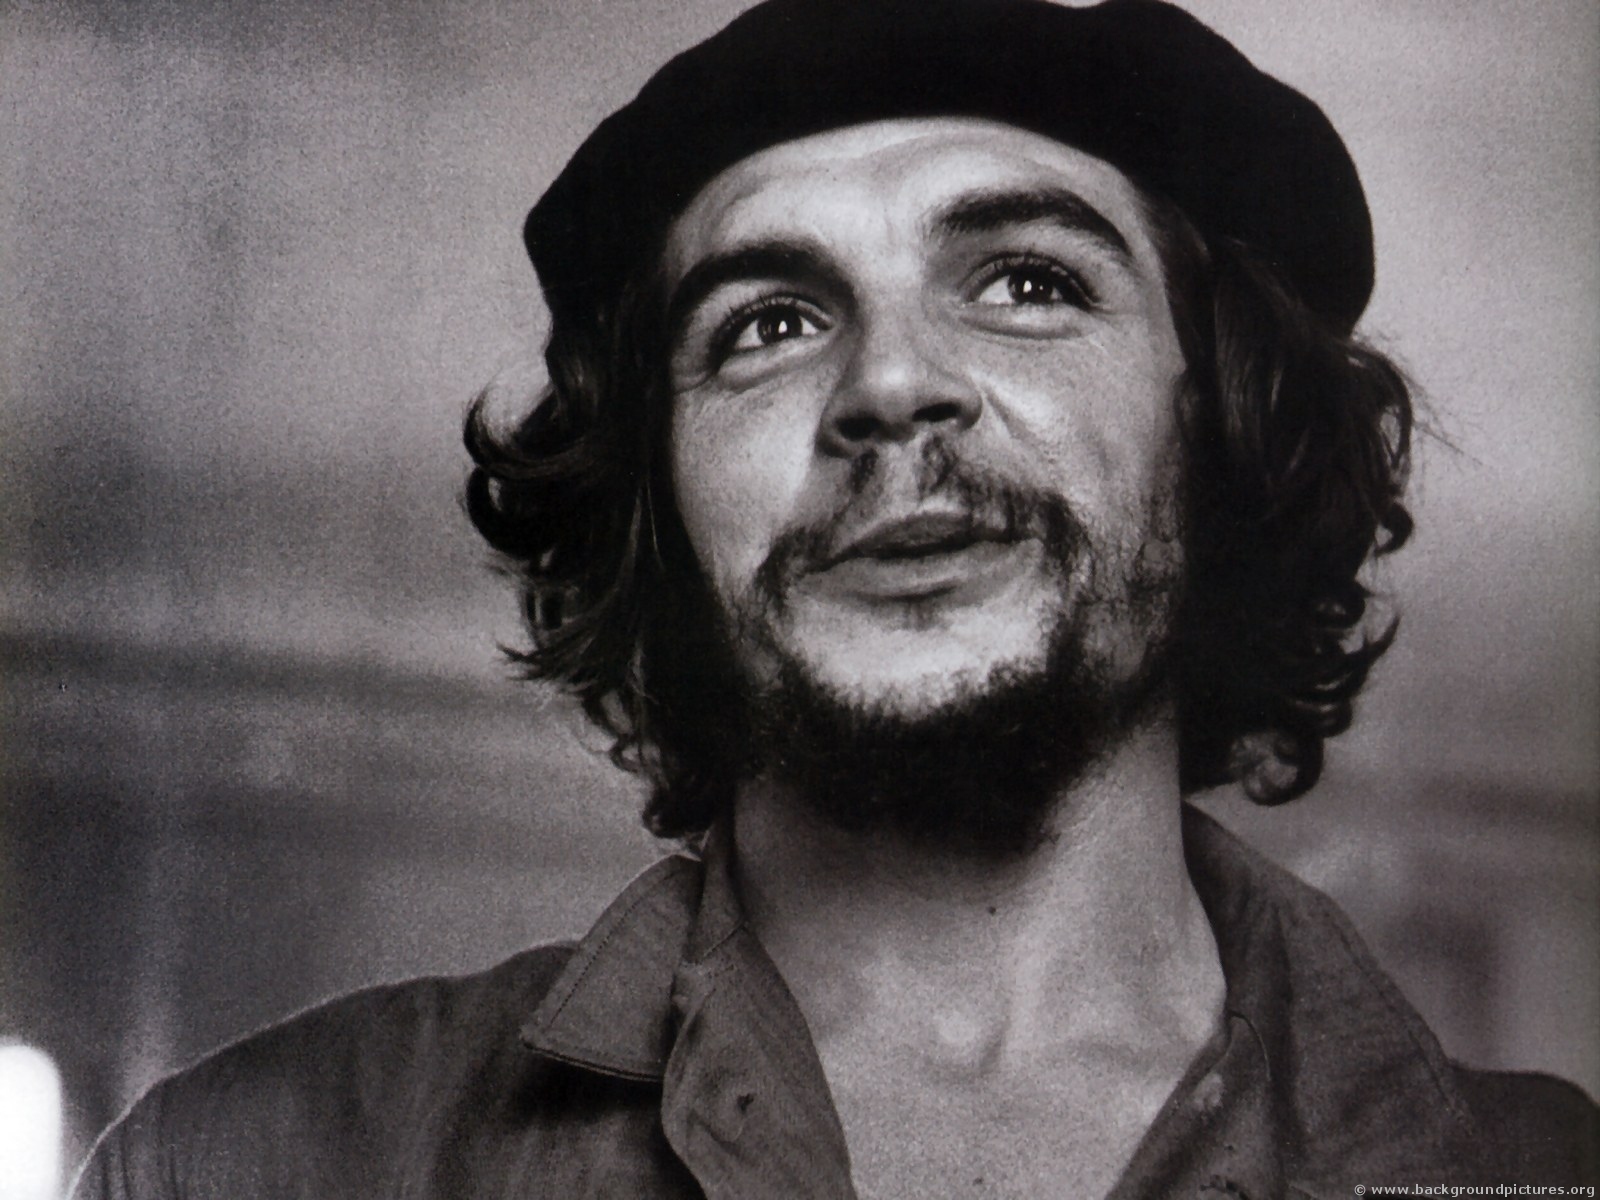 http://2.bp.blogspot.com/-4O0qt92X2P0/TtuLjVrukMI/AAAAAAAABbI/XlyaxuEFYmw/s1600/Che-Guevara-Rare-Pictures-5.jpg